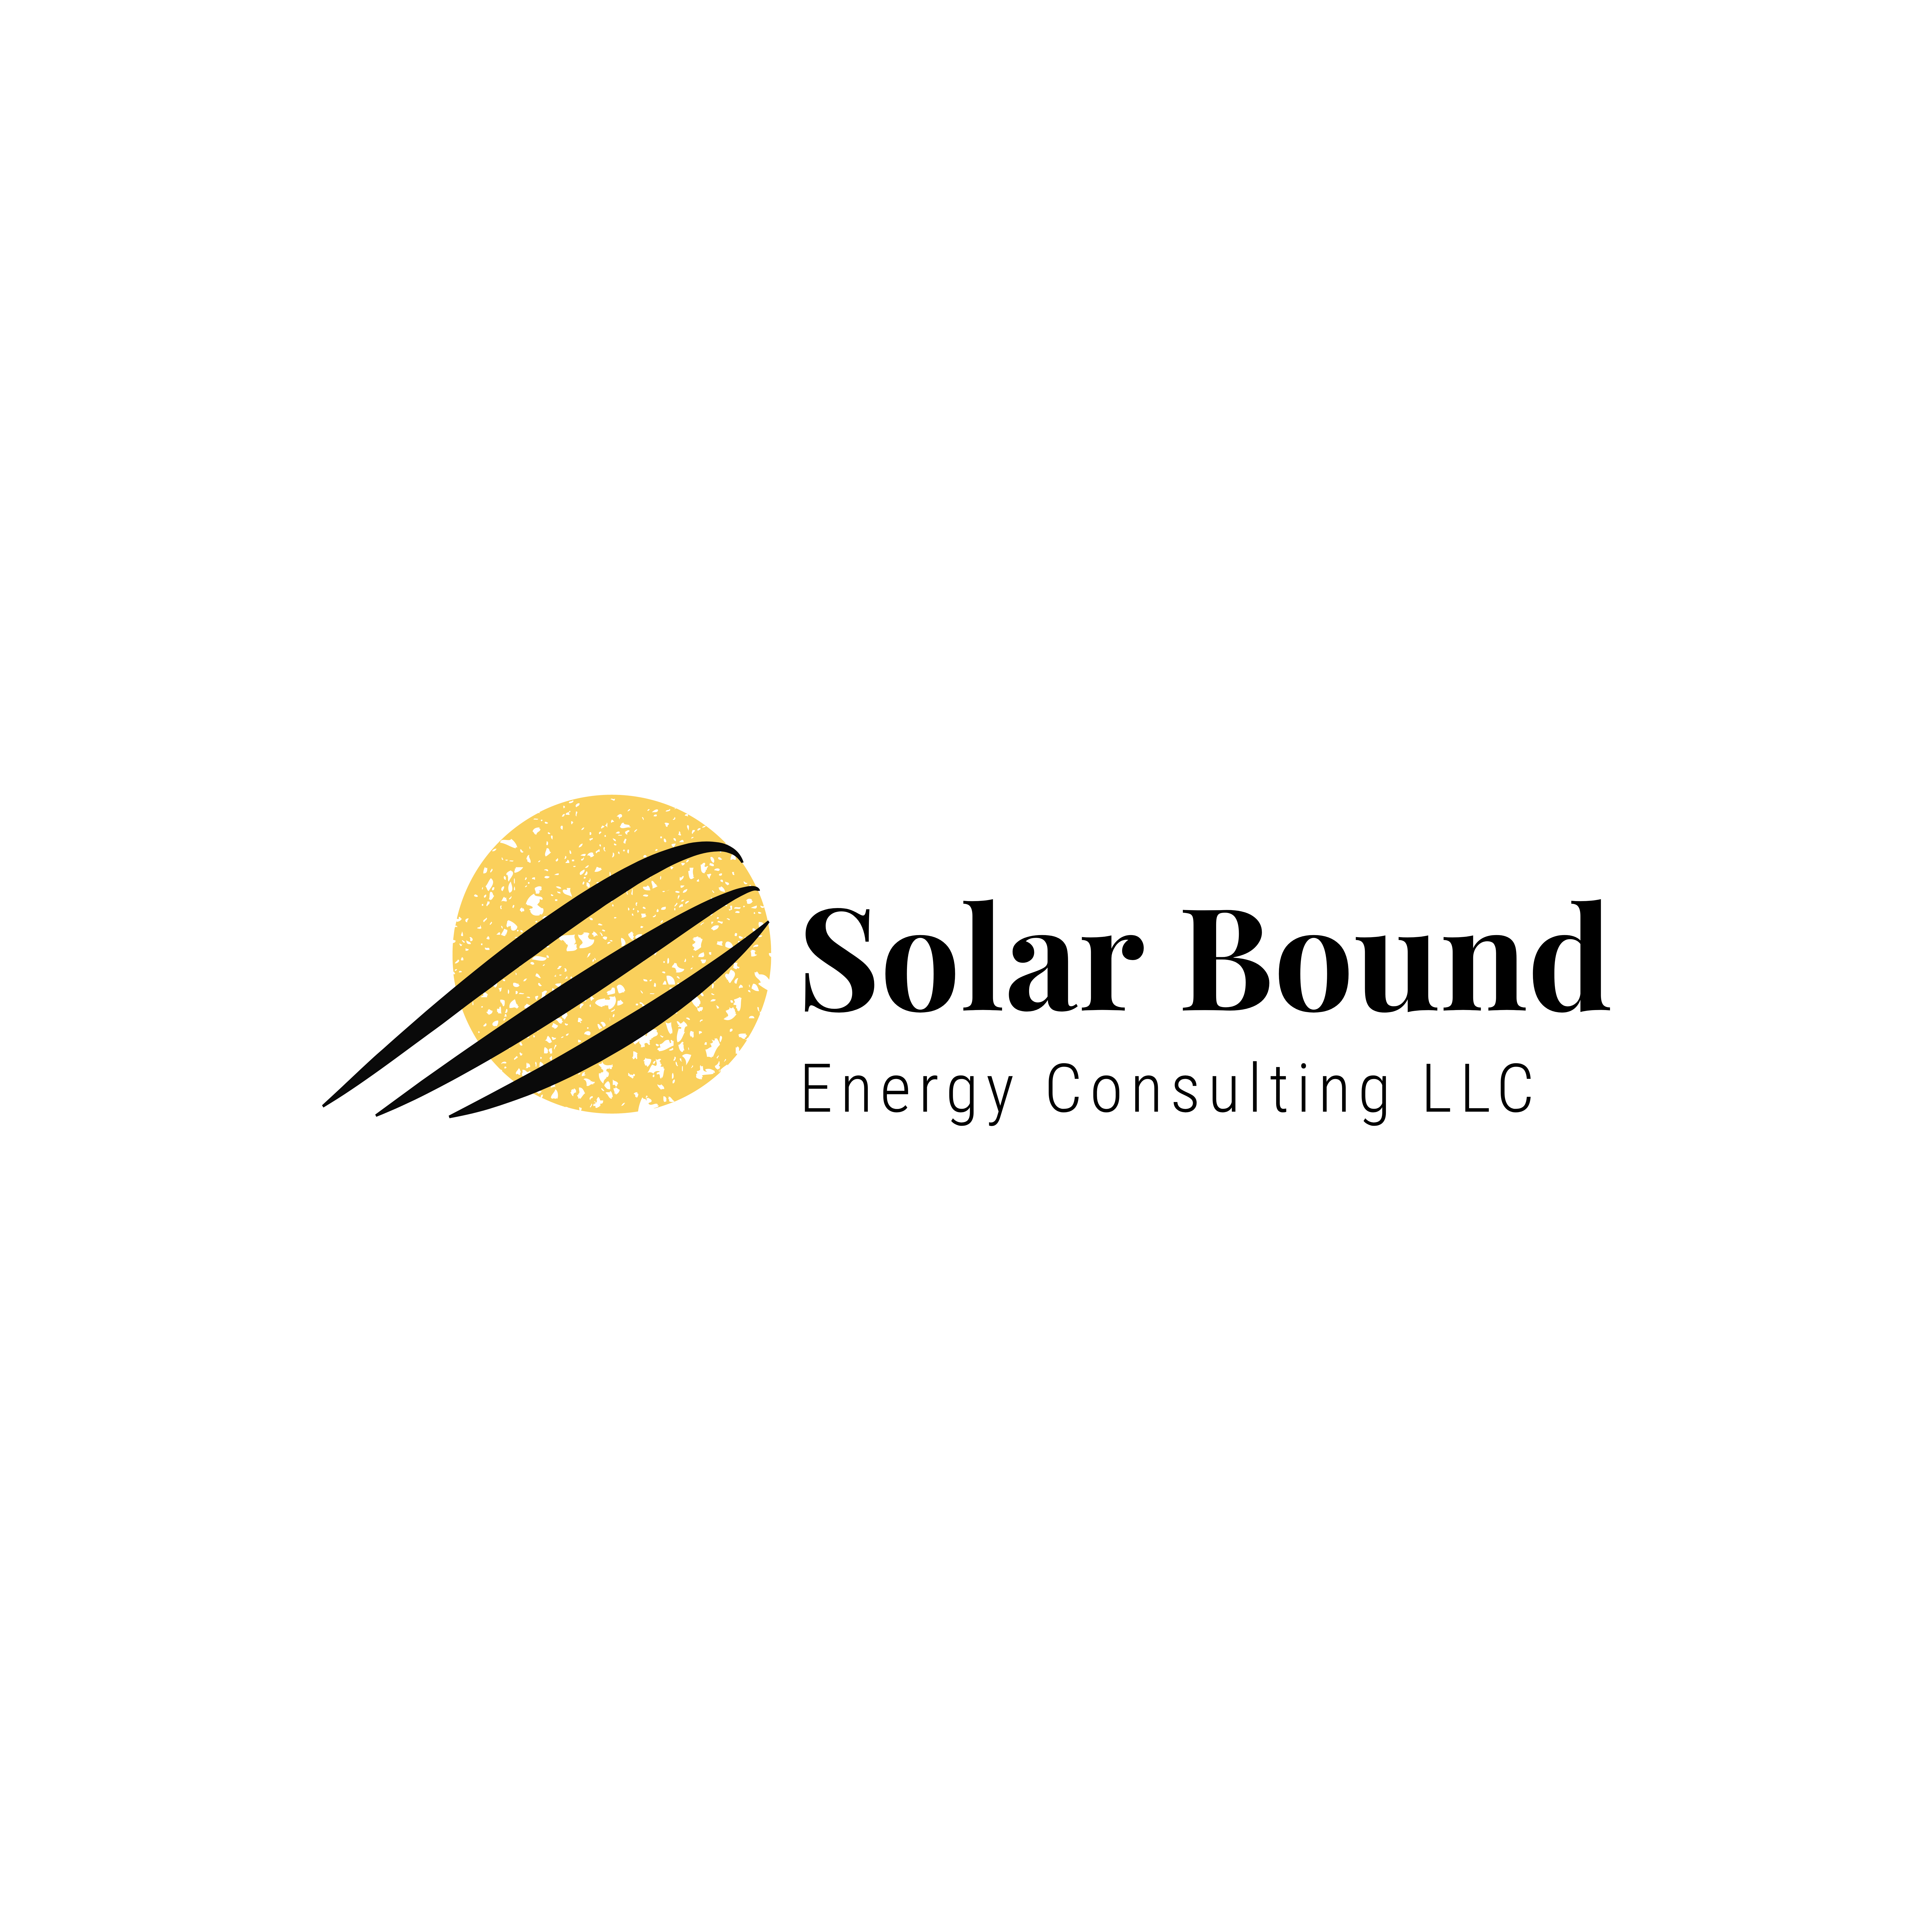 Solarbound Energy